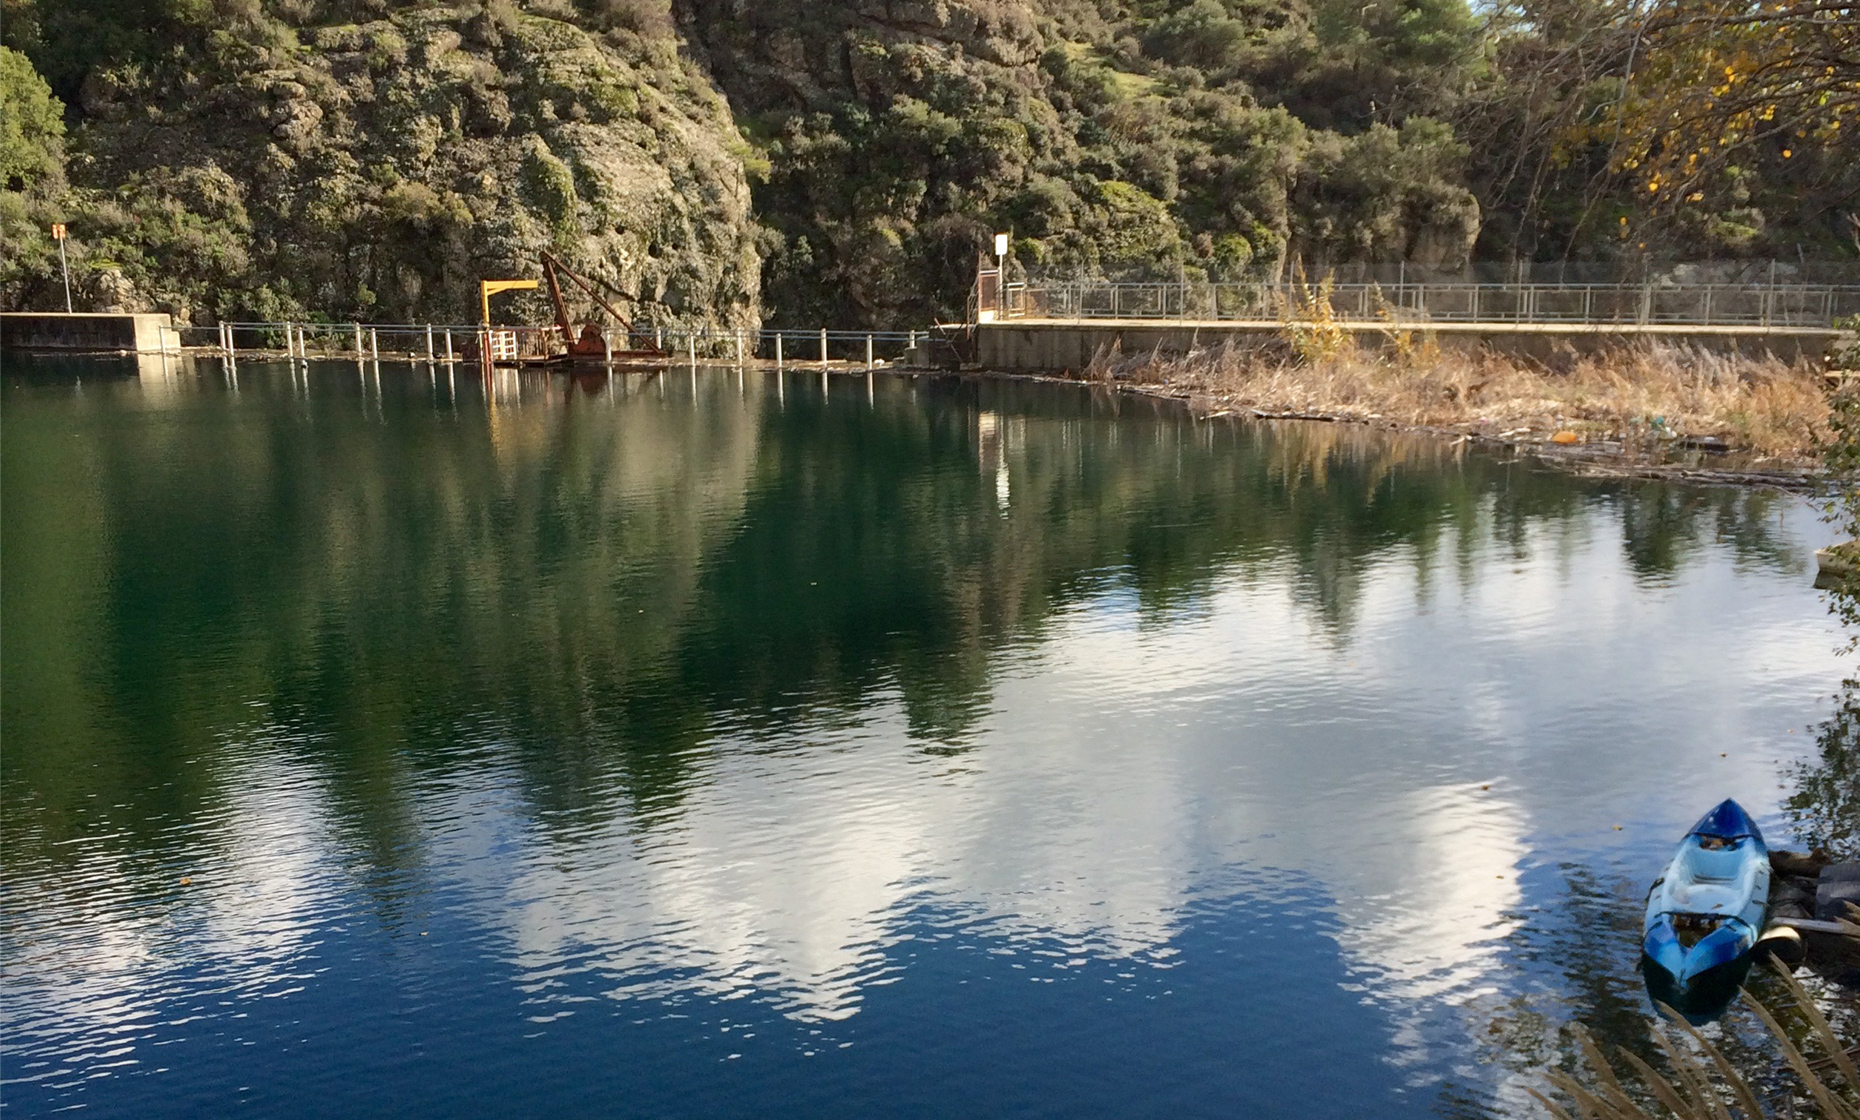 Saittas Dam in Moniatis